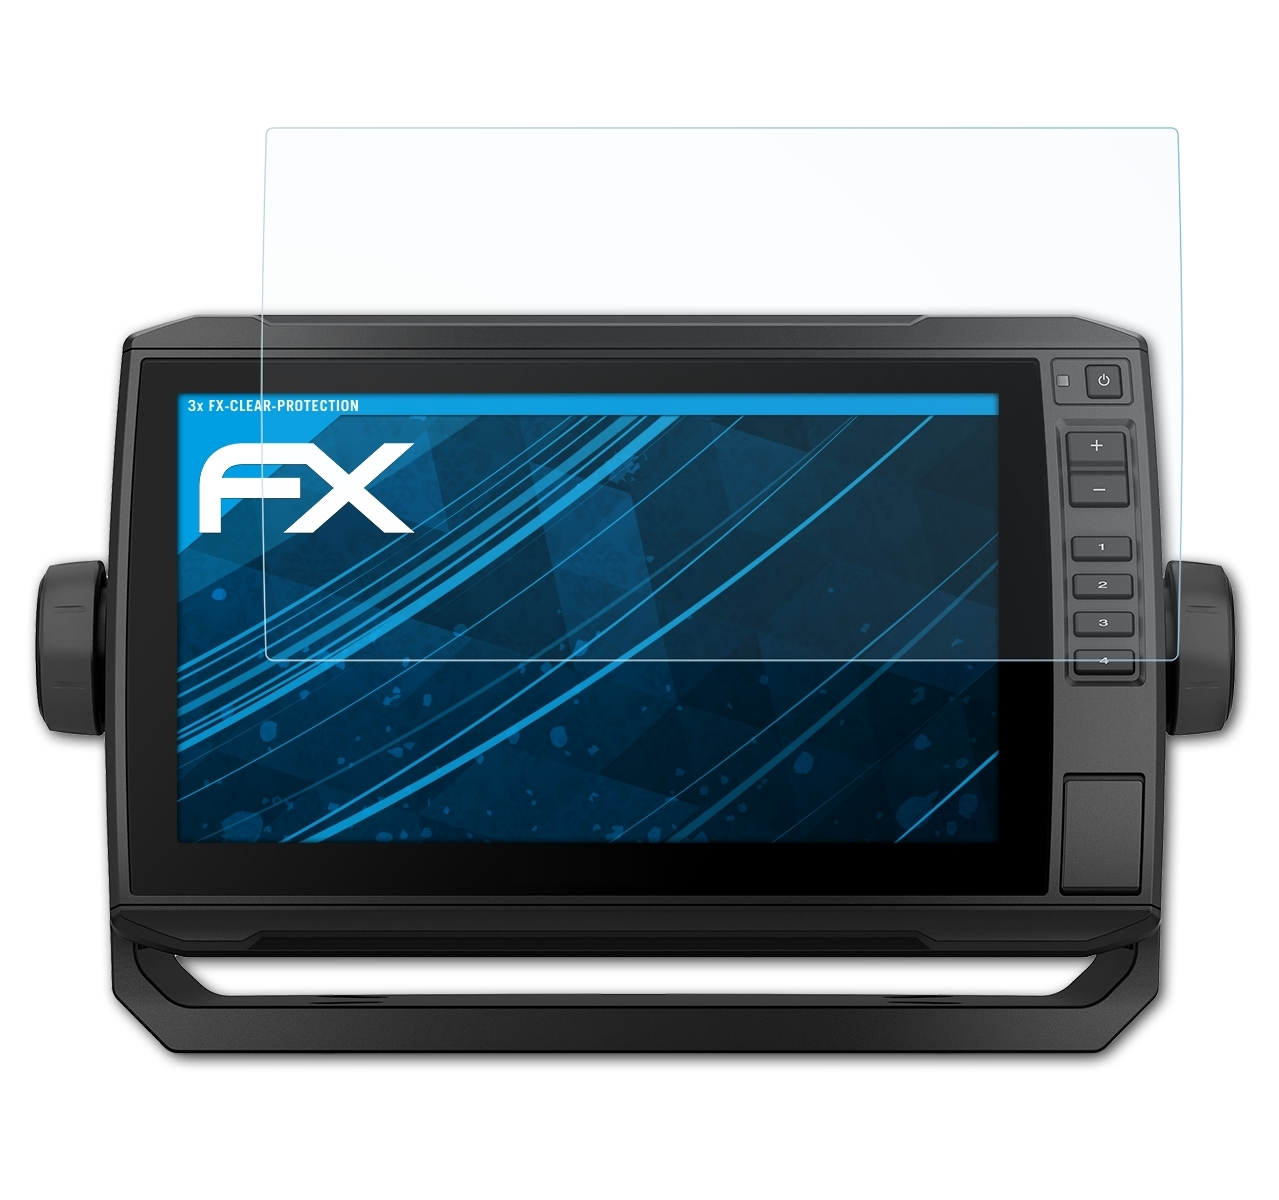 ATFOLIX 3x Displayschutz(für FX-Clear 92sv) UHD ECHOMap Garmin